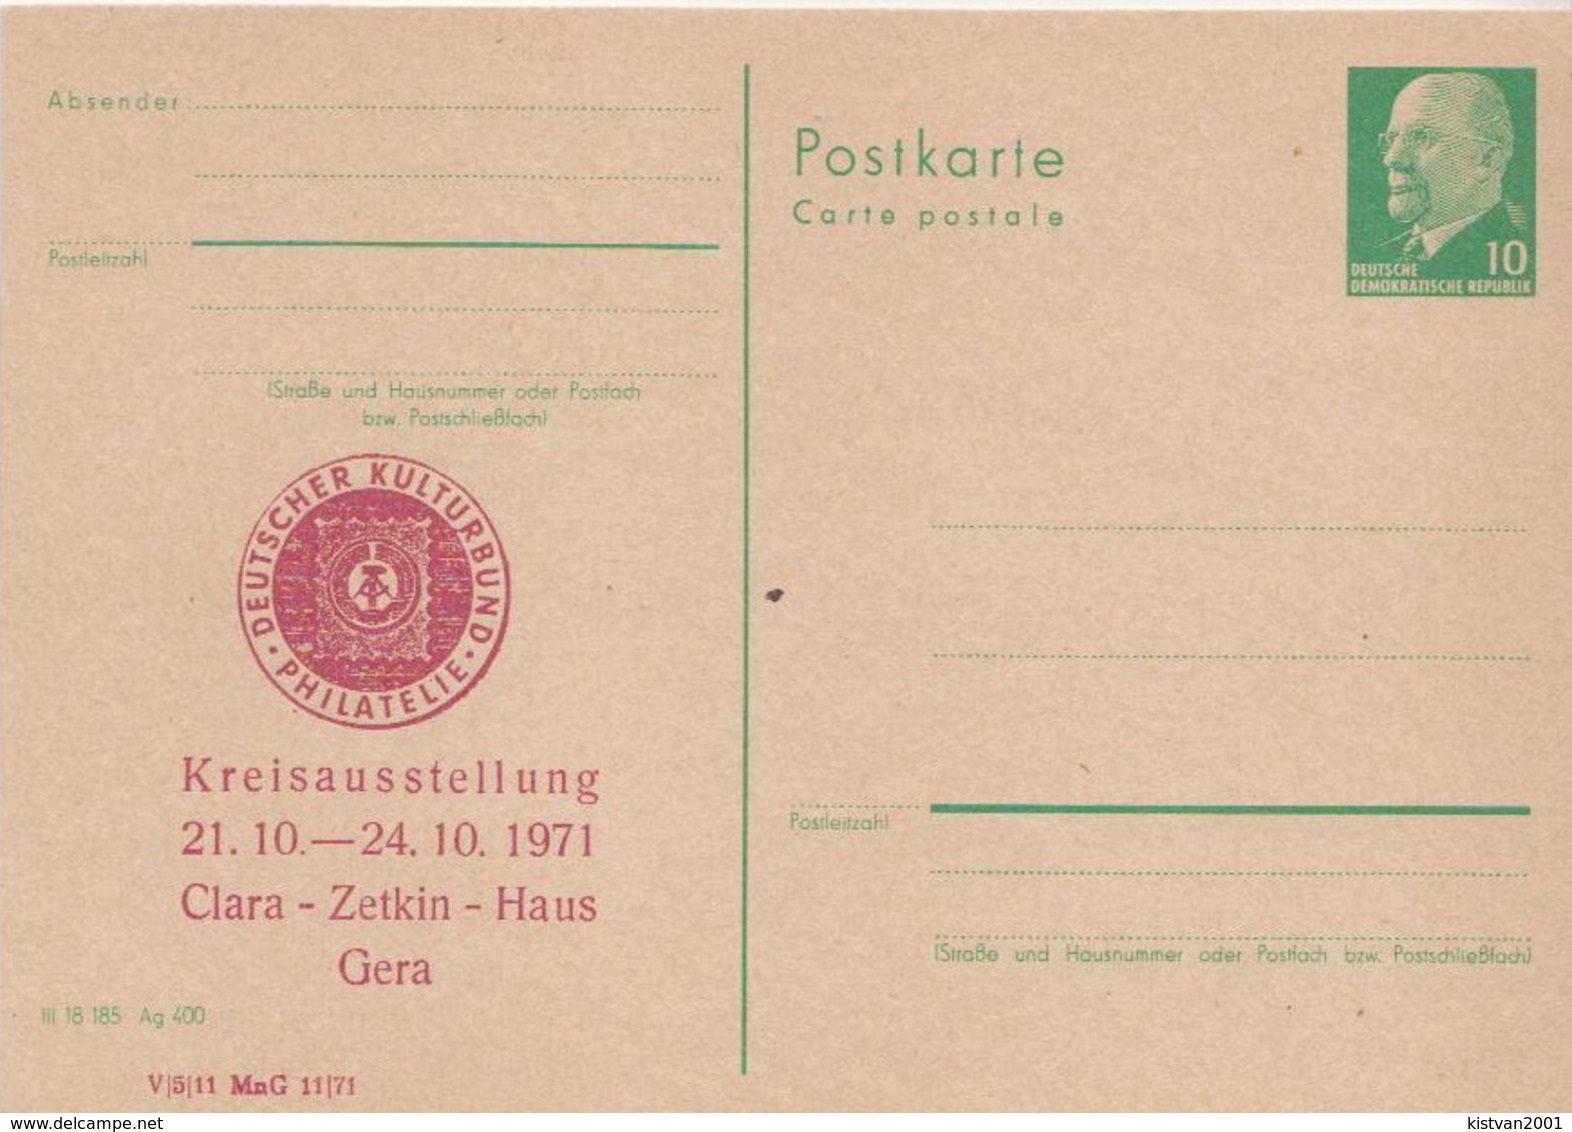 Germany / DDR Mint Postal Card, Ulbricht - Postcards - Mint